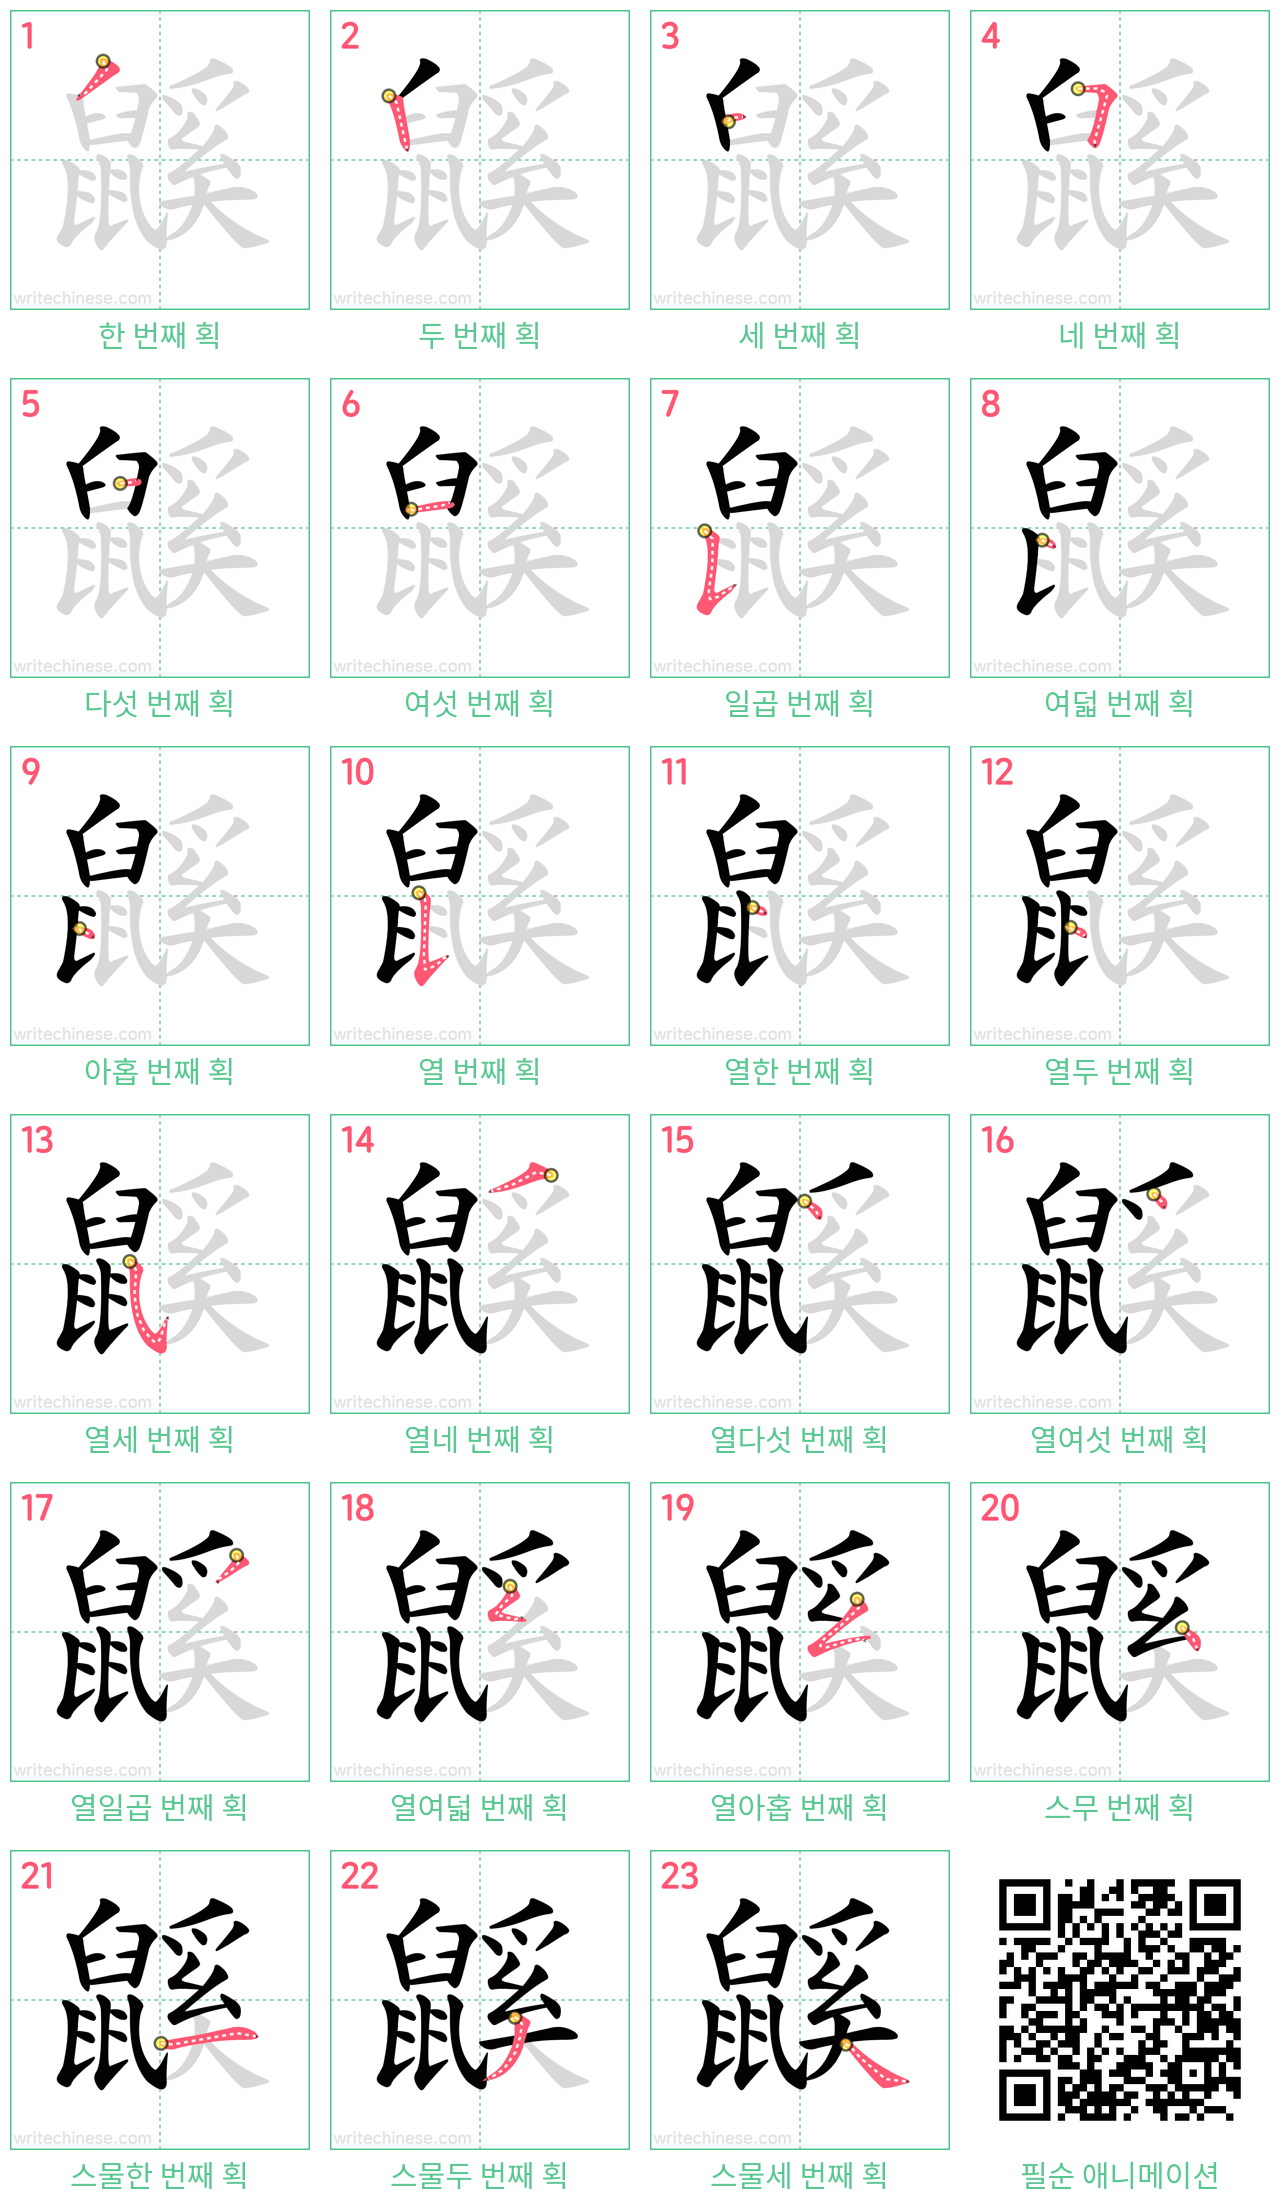 鼷 step-by-step stroke order diagrams